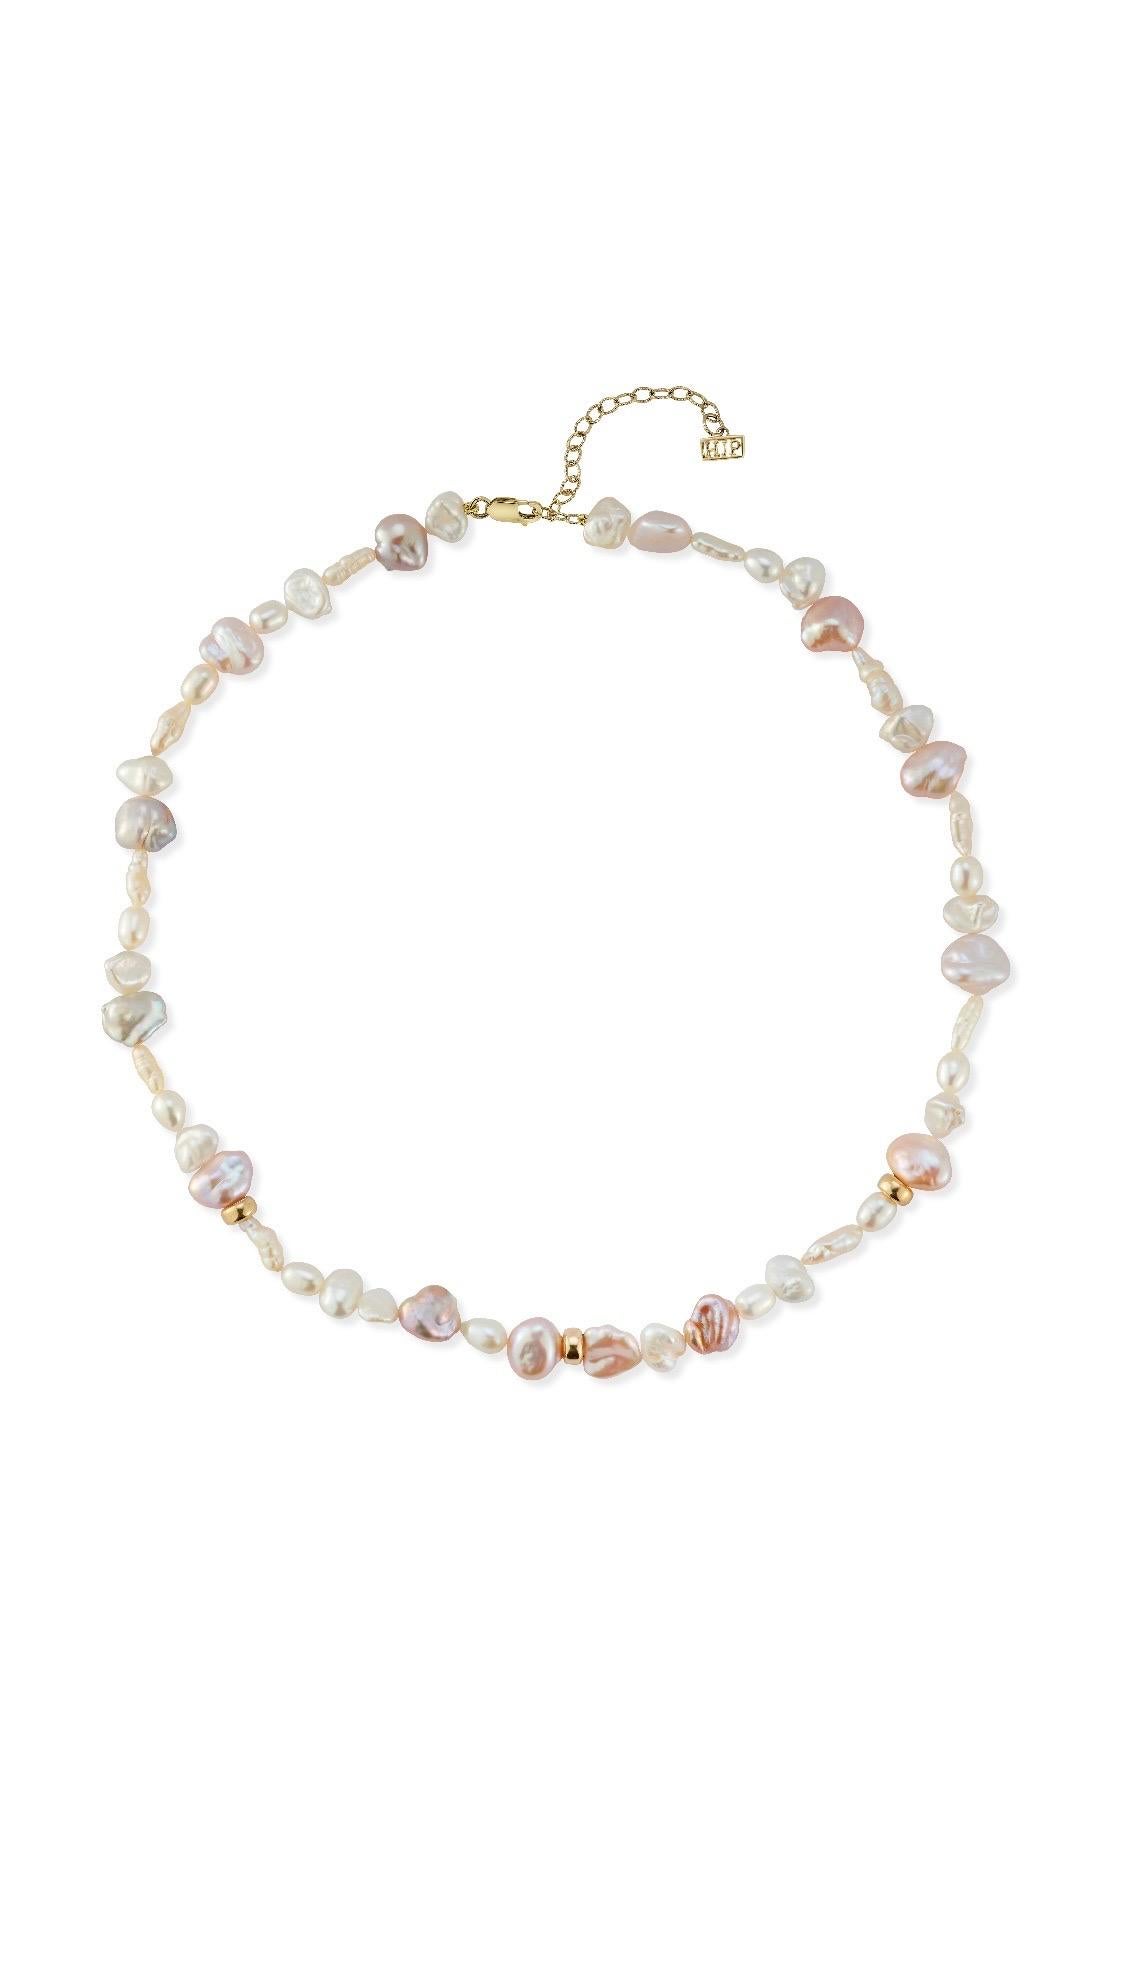 Gemischtes Perlenhalsband mit Barock-, Keshi- und ovalen Perlenformen. 

Ideal als Halskette zu tragen, um die verschiedenen Perlenformen und -töne hervorzuheben, und mit der Verlängerungskette auf 16